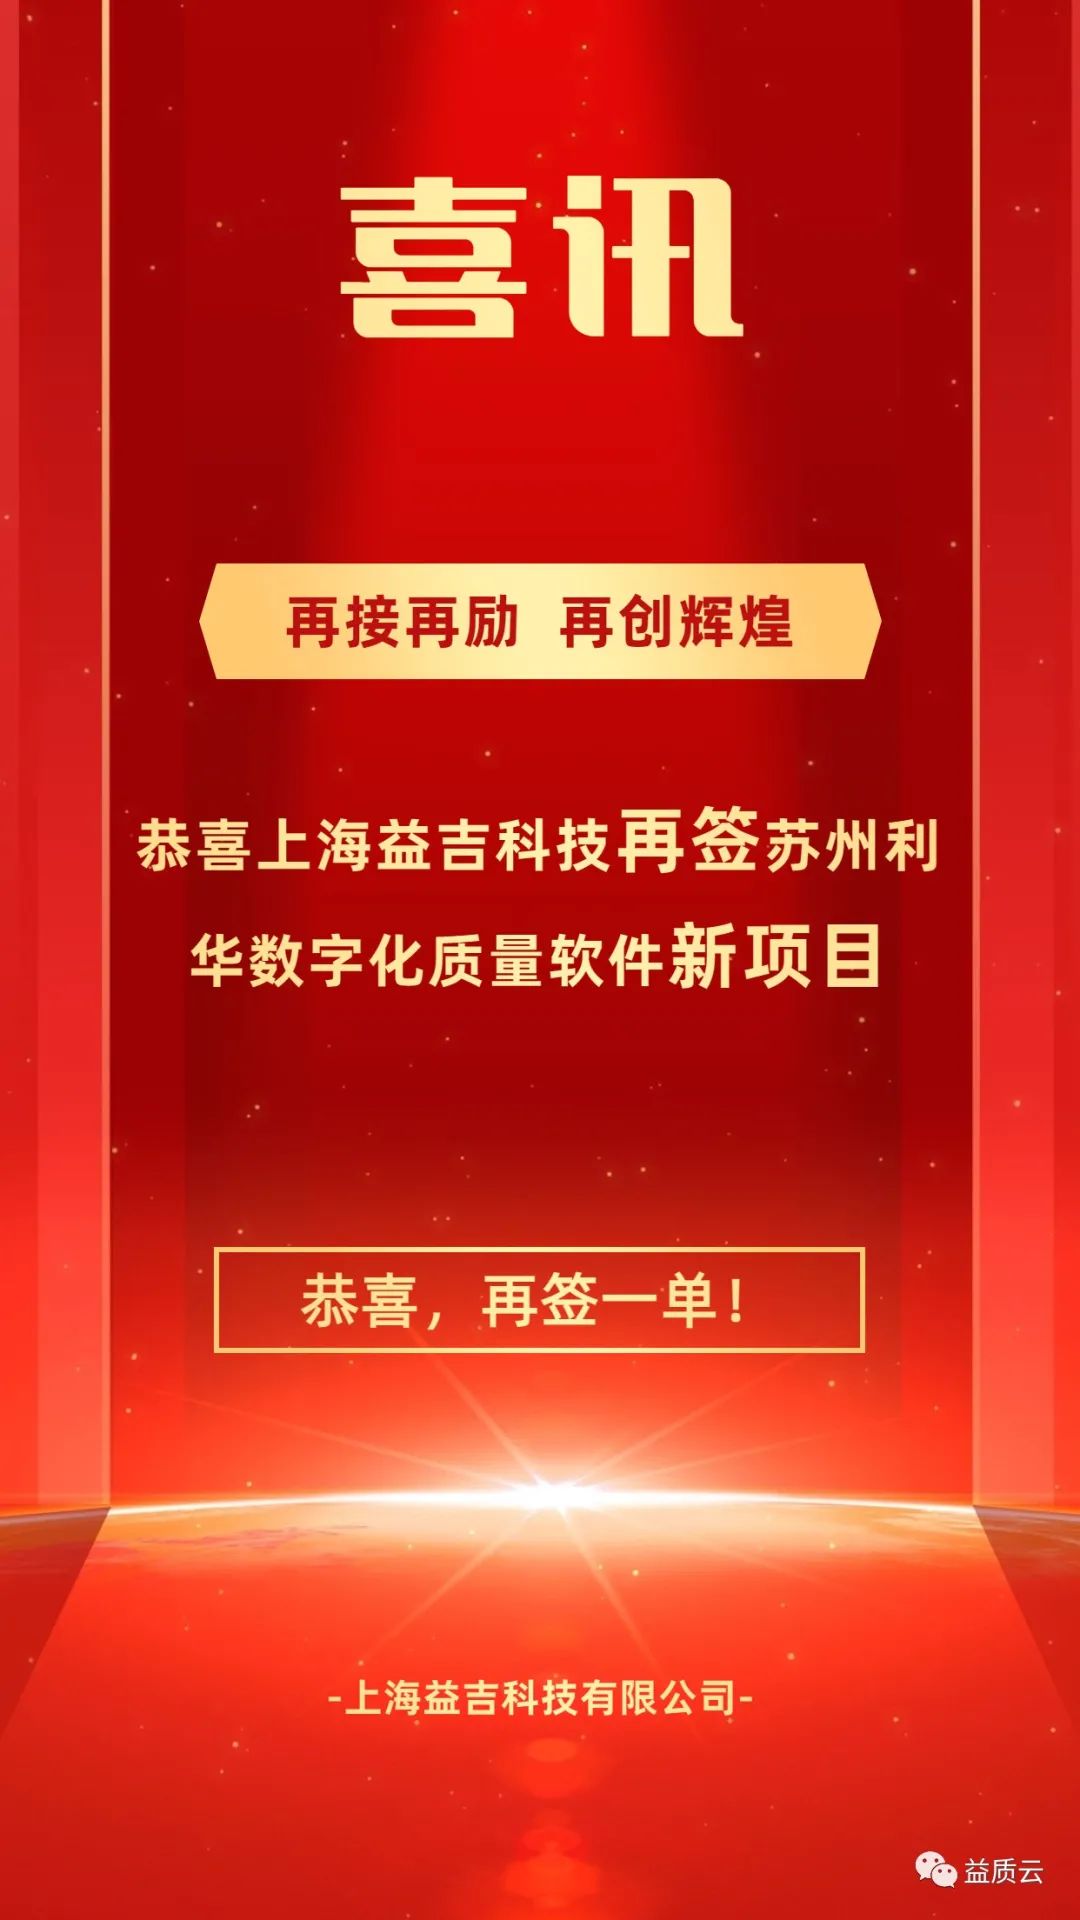 【喜讯】热烈祝贺上海益吉科技再签苏州利华数字化质量管理之“速审”产品！